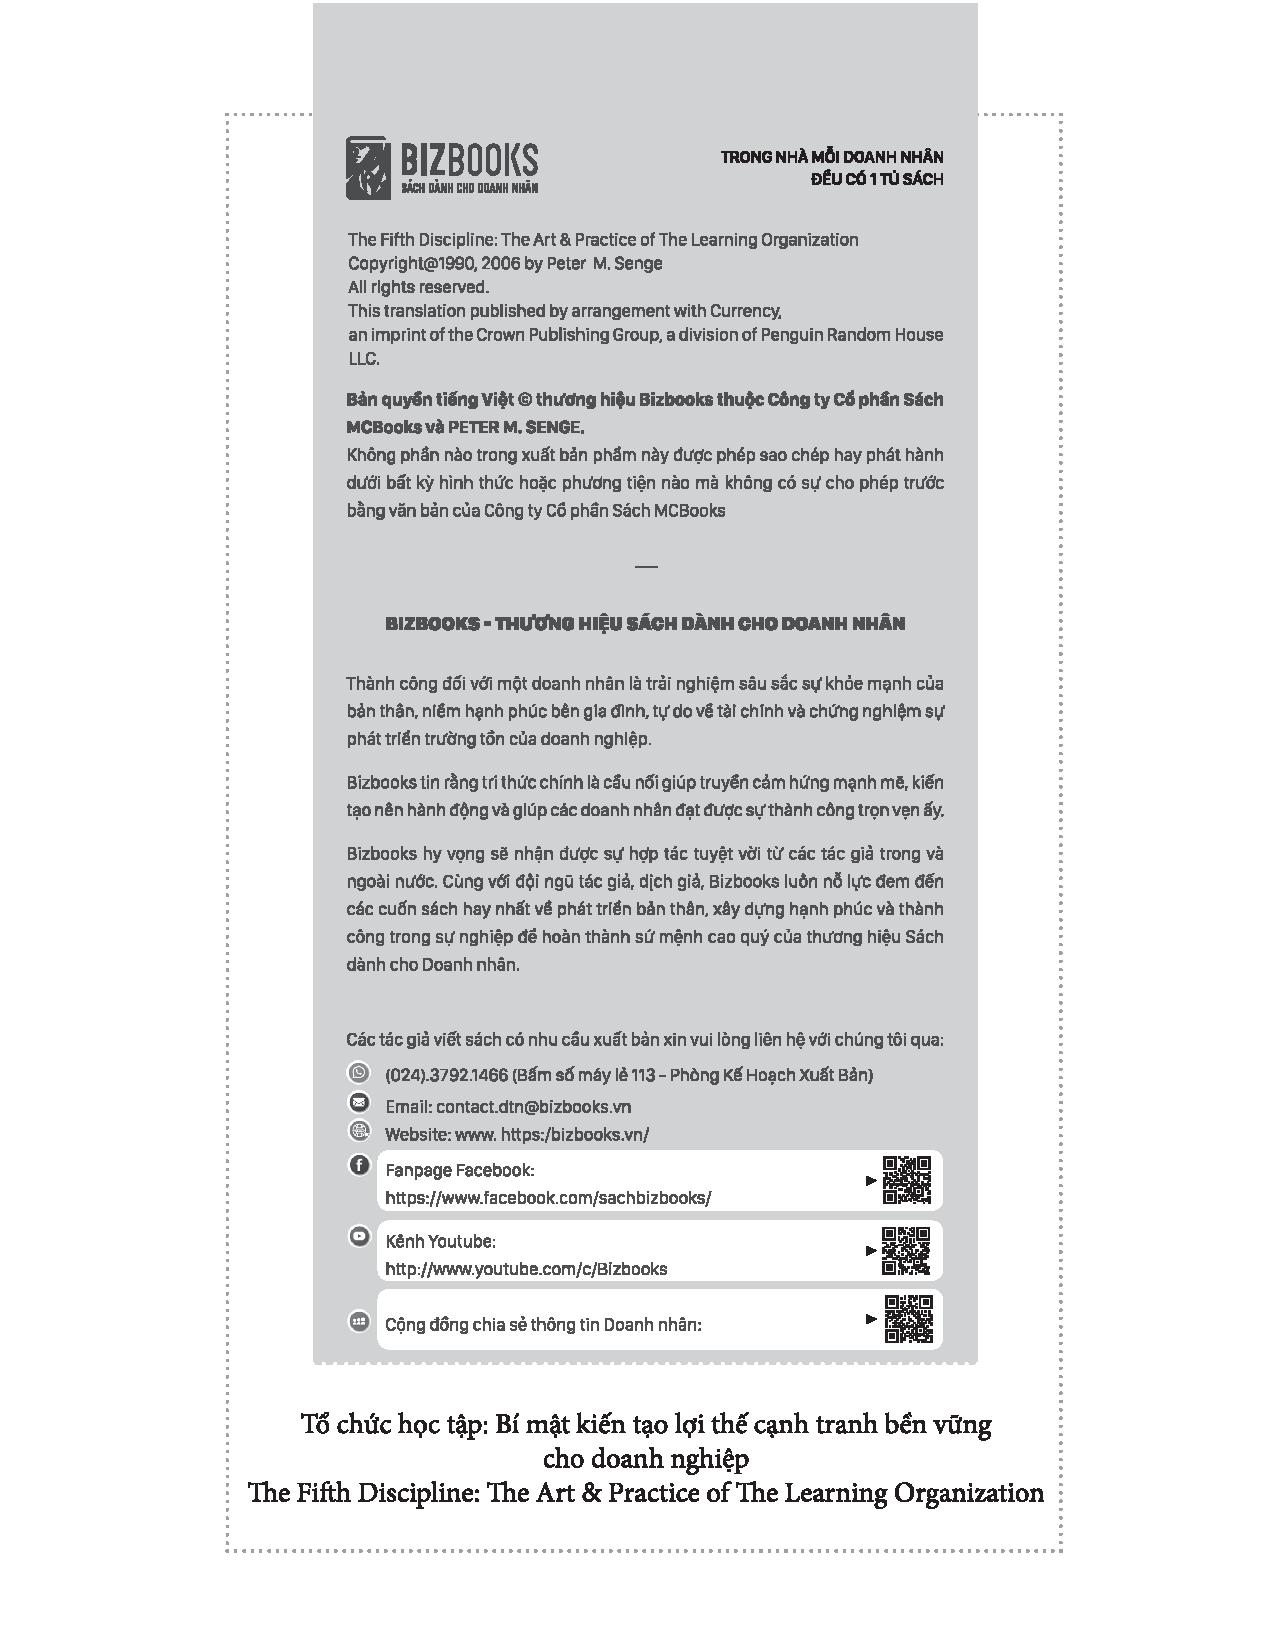 Tổ Chức Học Tập - Bí Mật Kiến Tạo Lợi Thế Cạnh Tranh Bền Vững Cho Doanh Nghiệp PDF